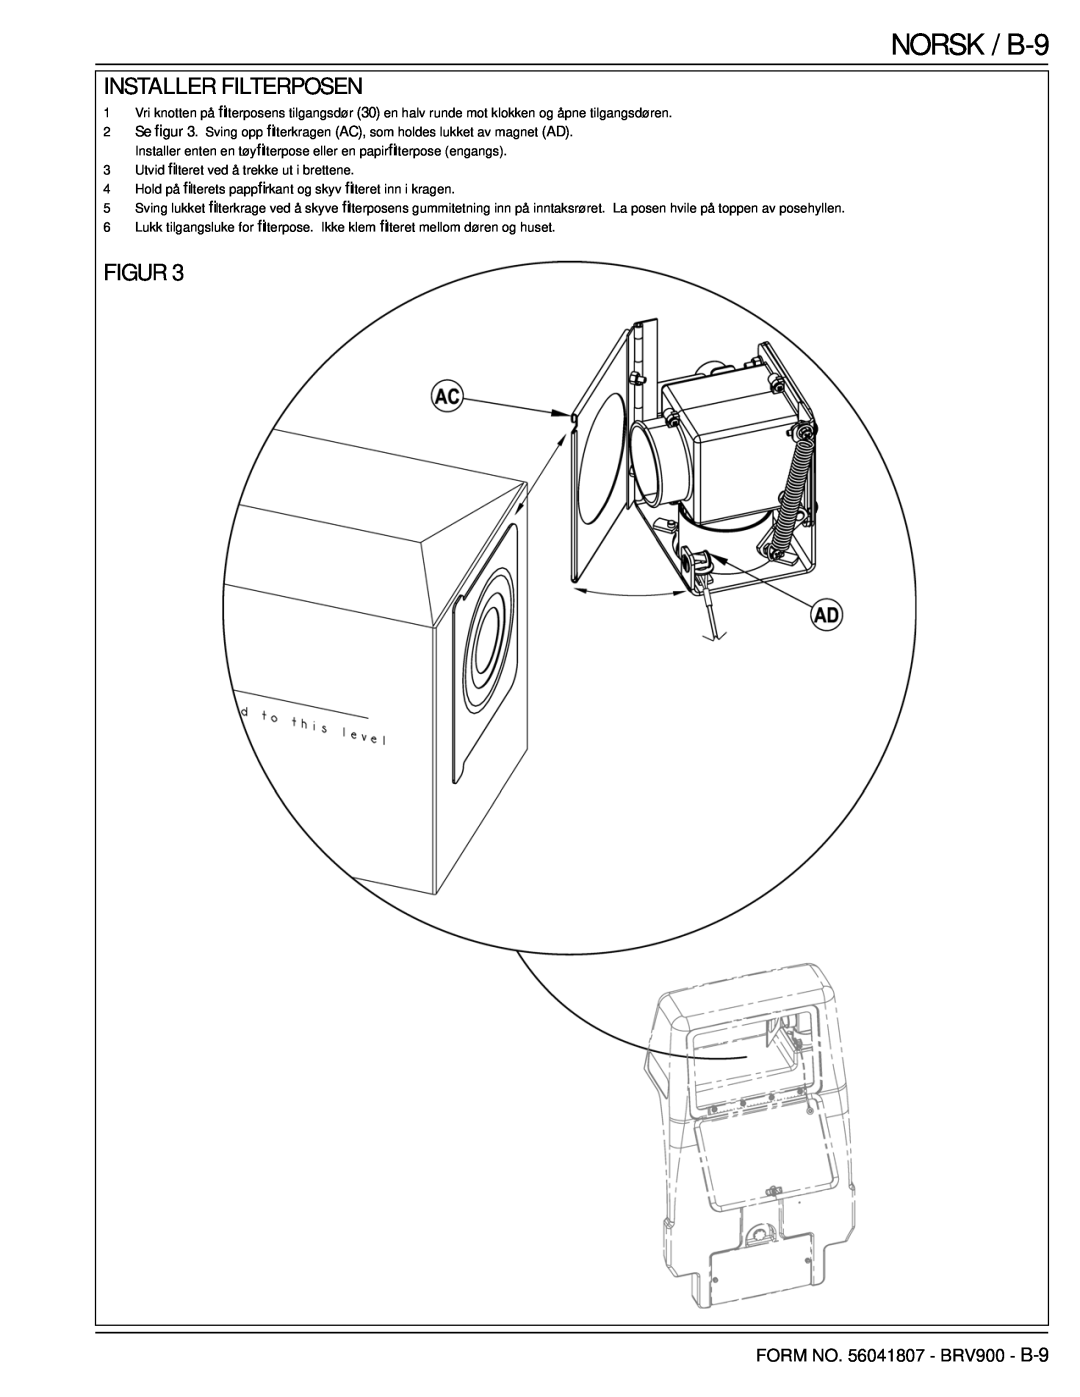 Nilfisk-Advance America 56602002 manual NORSK / B-9, Installer Filterposen, Figur, FORM NO. 56041807 - BRV900 - B-9 